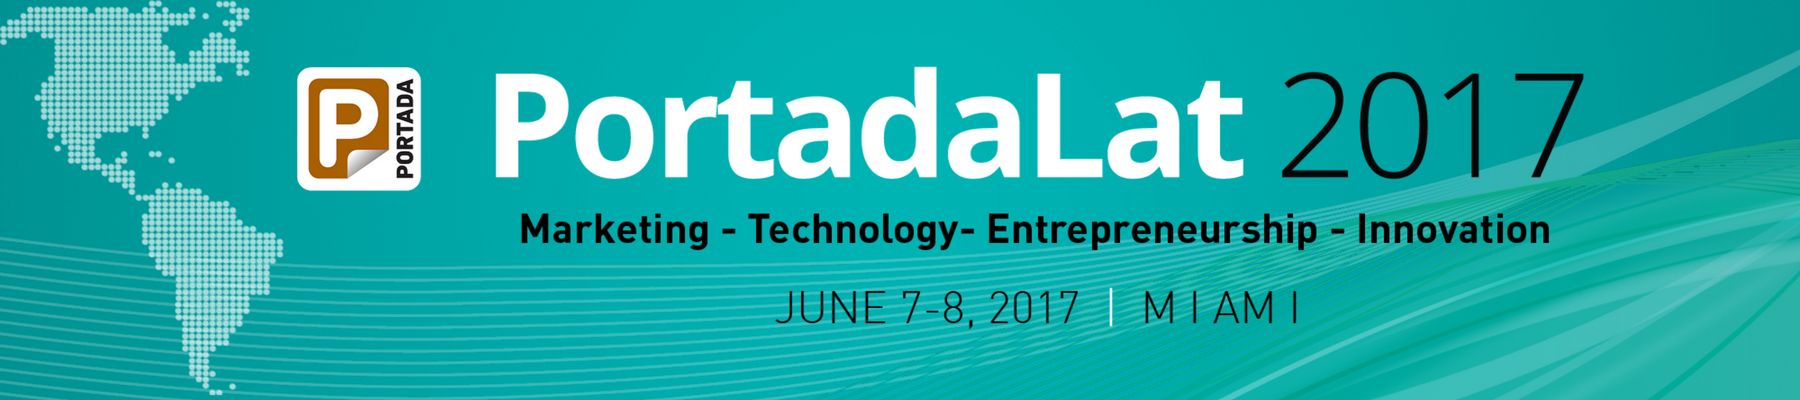 #PortadaLat, June 7-8, Miami